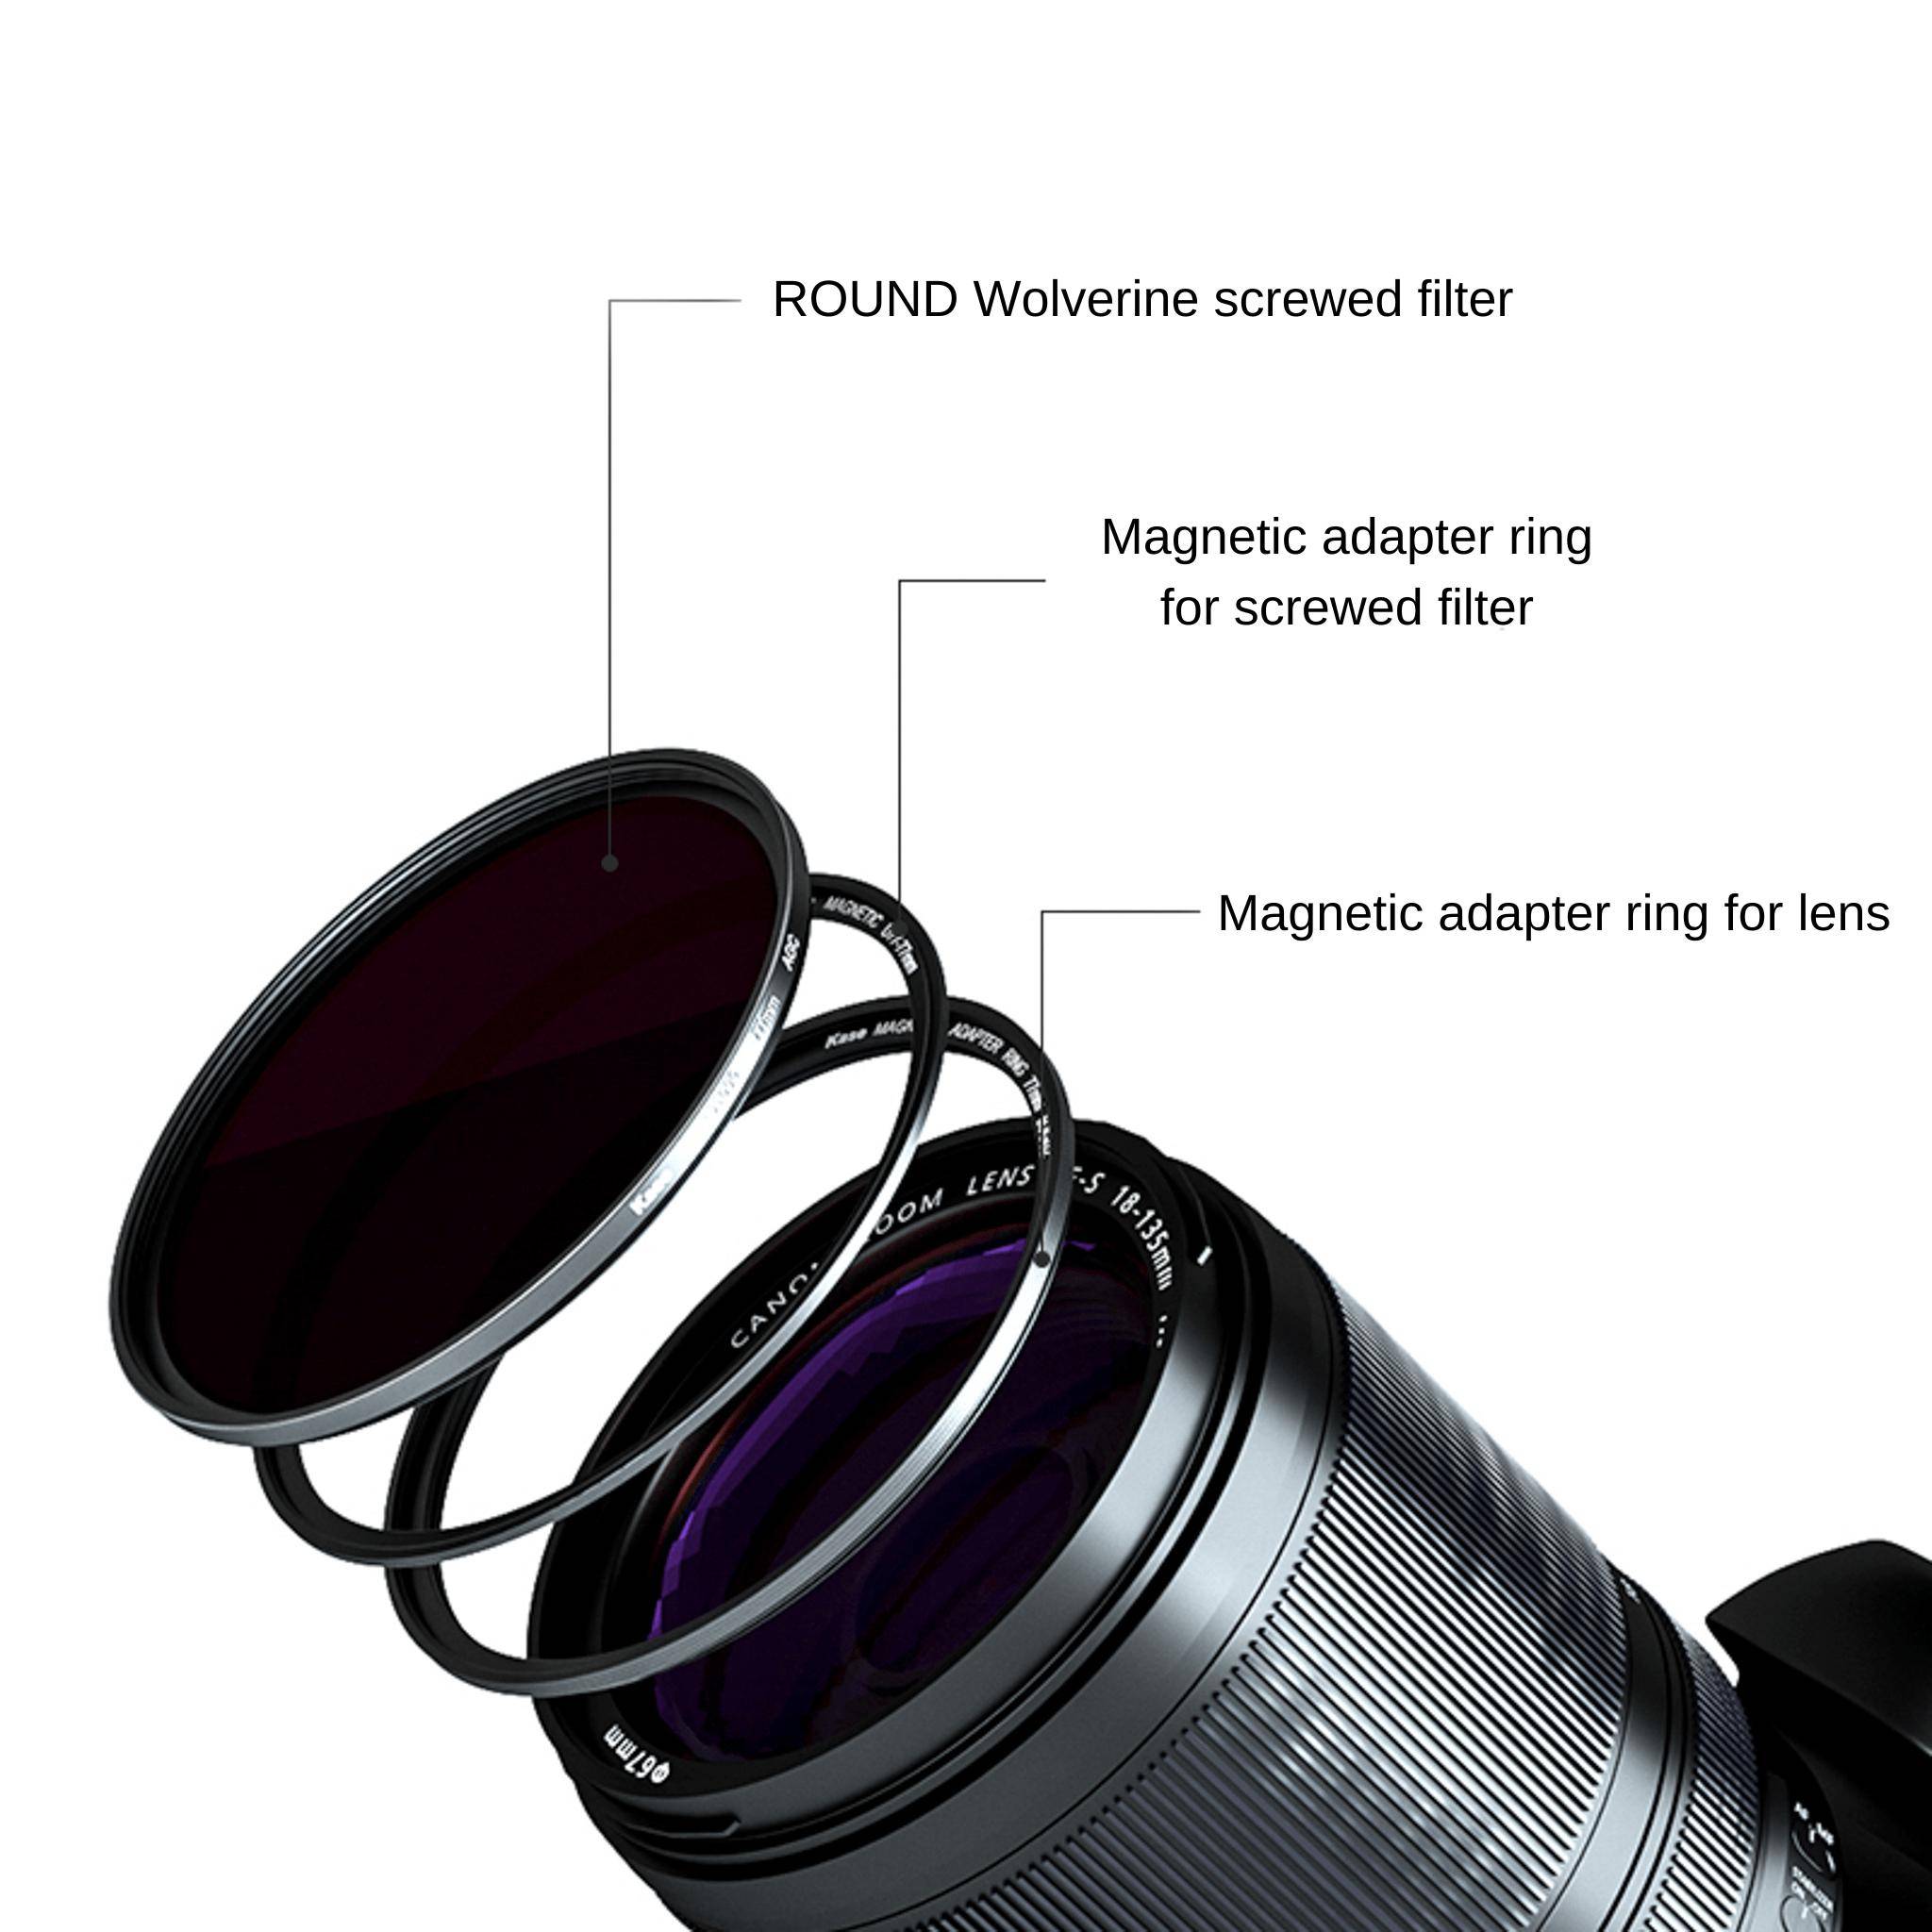 Magnetisches Adapter Set für Einschraub Filter